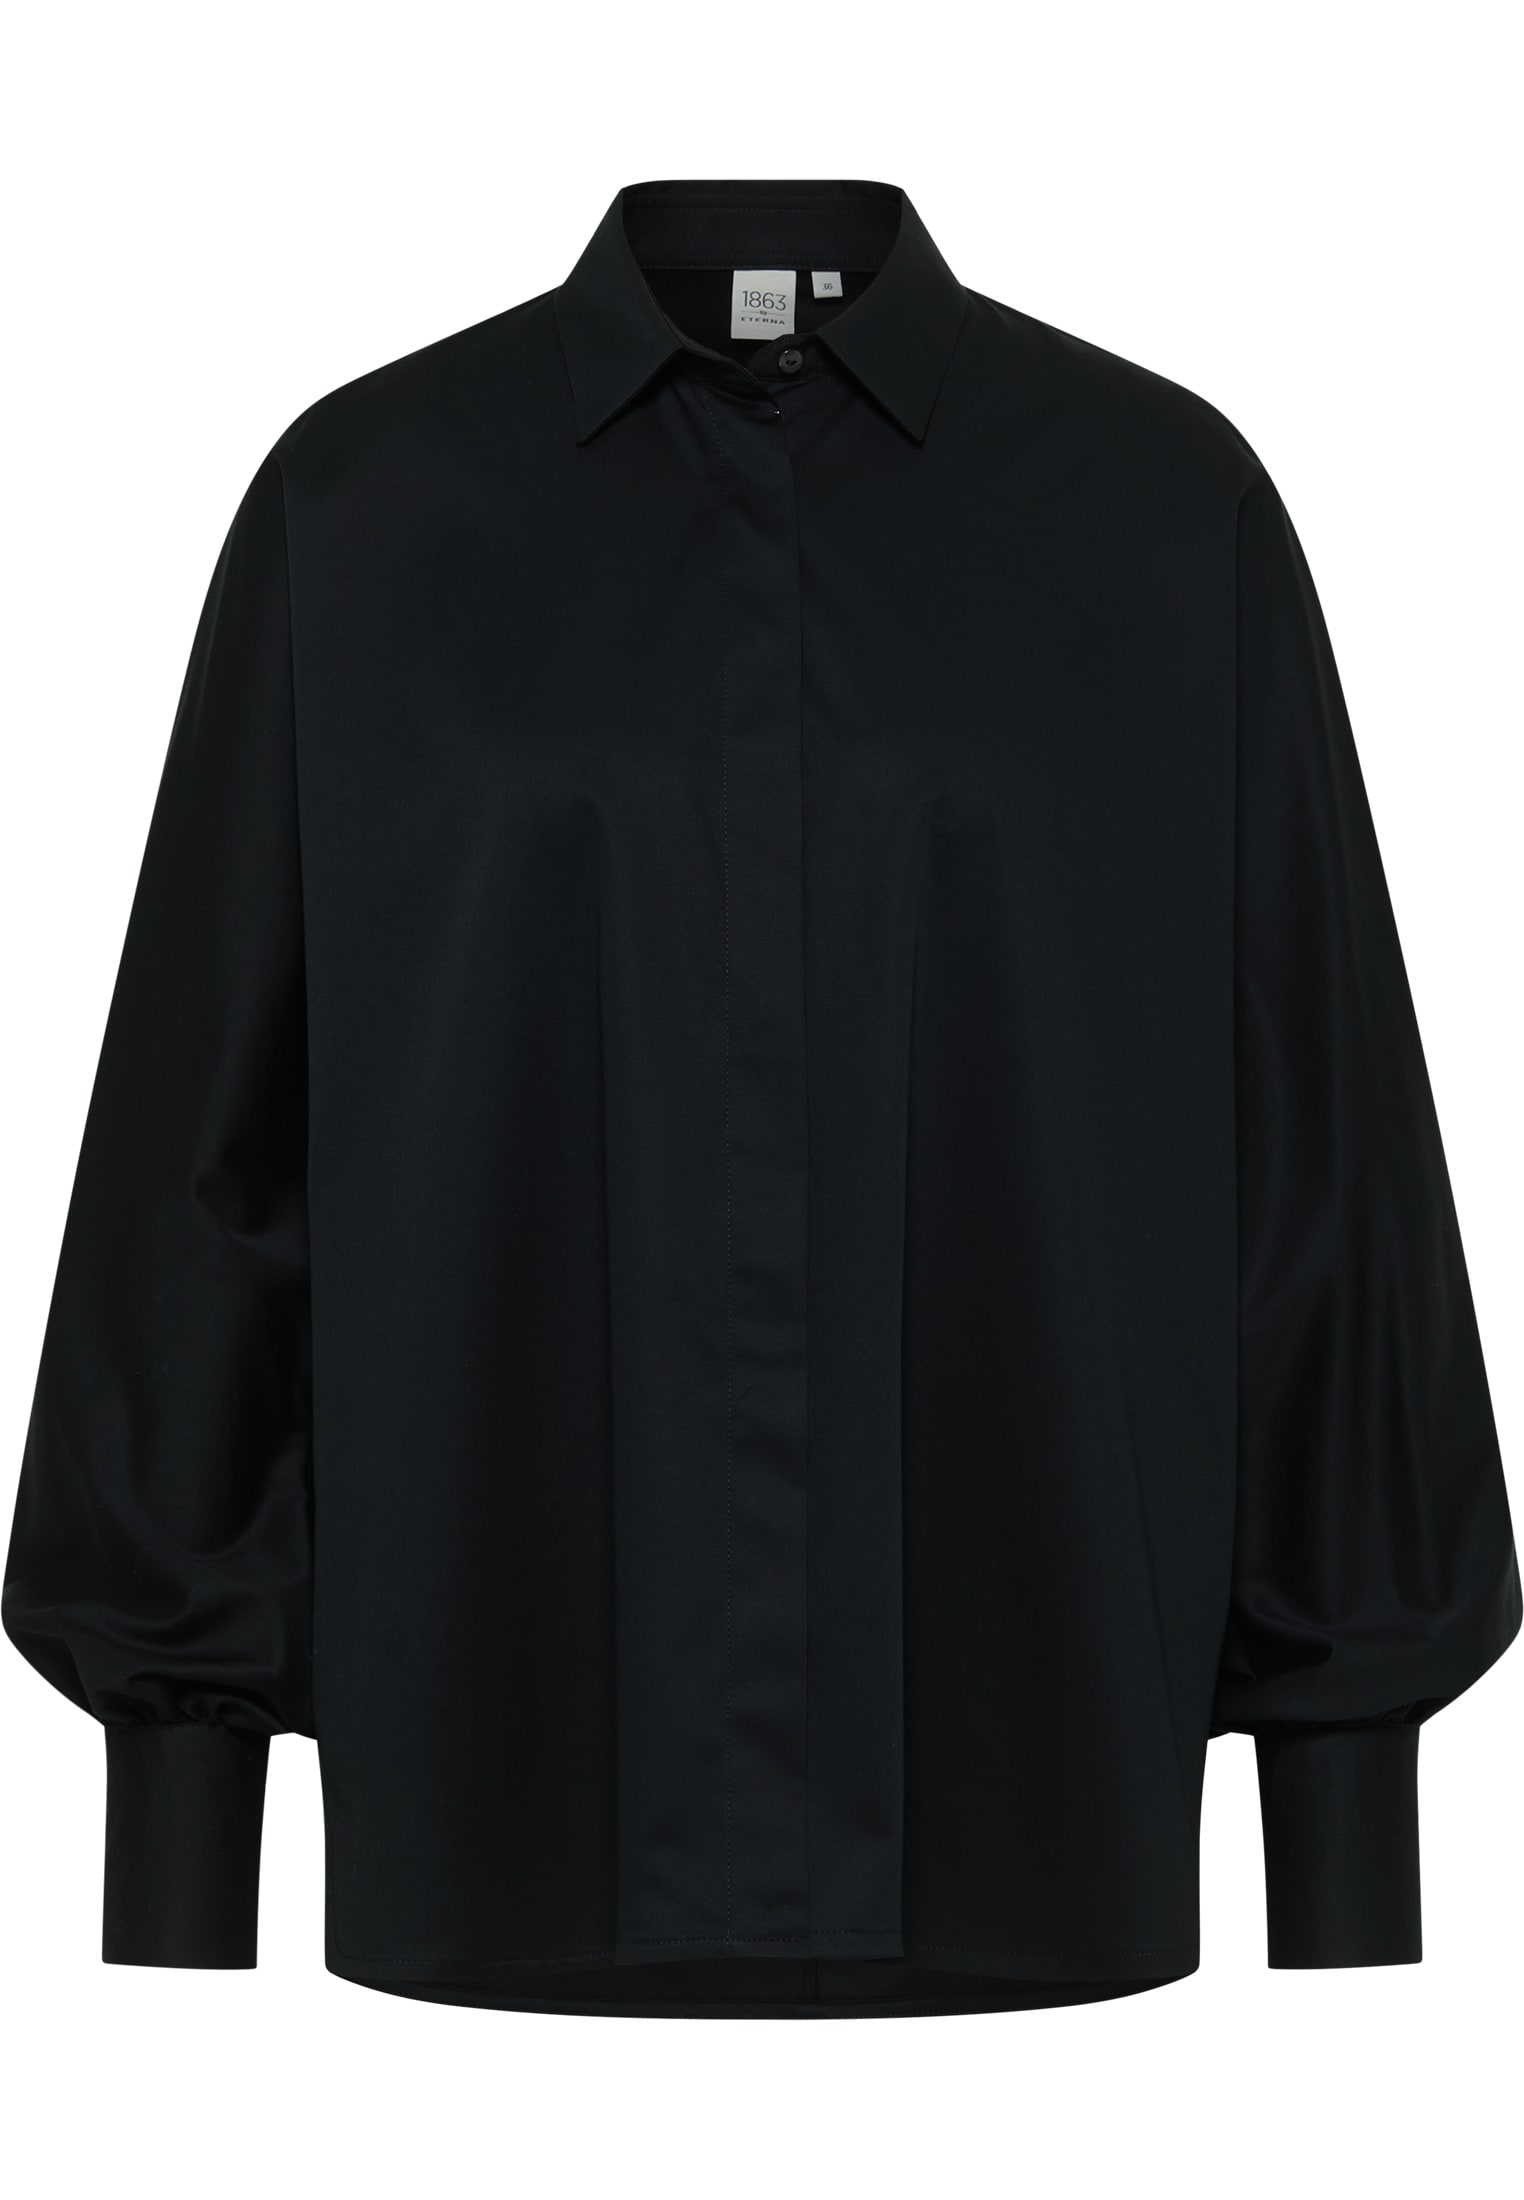 Satin Shirt schwarz | schwarz Bluse 40 unifarben 2BL04026-03-91-40-1/1 in | | | Langarm